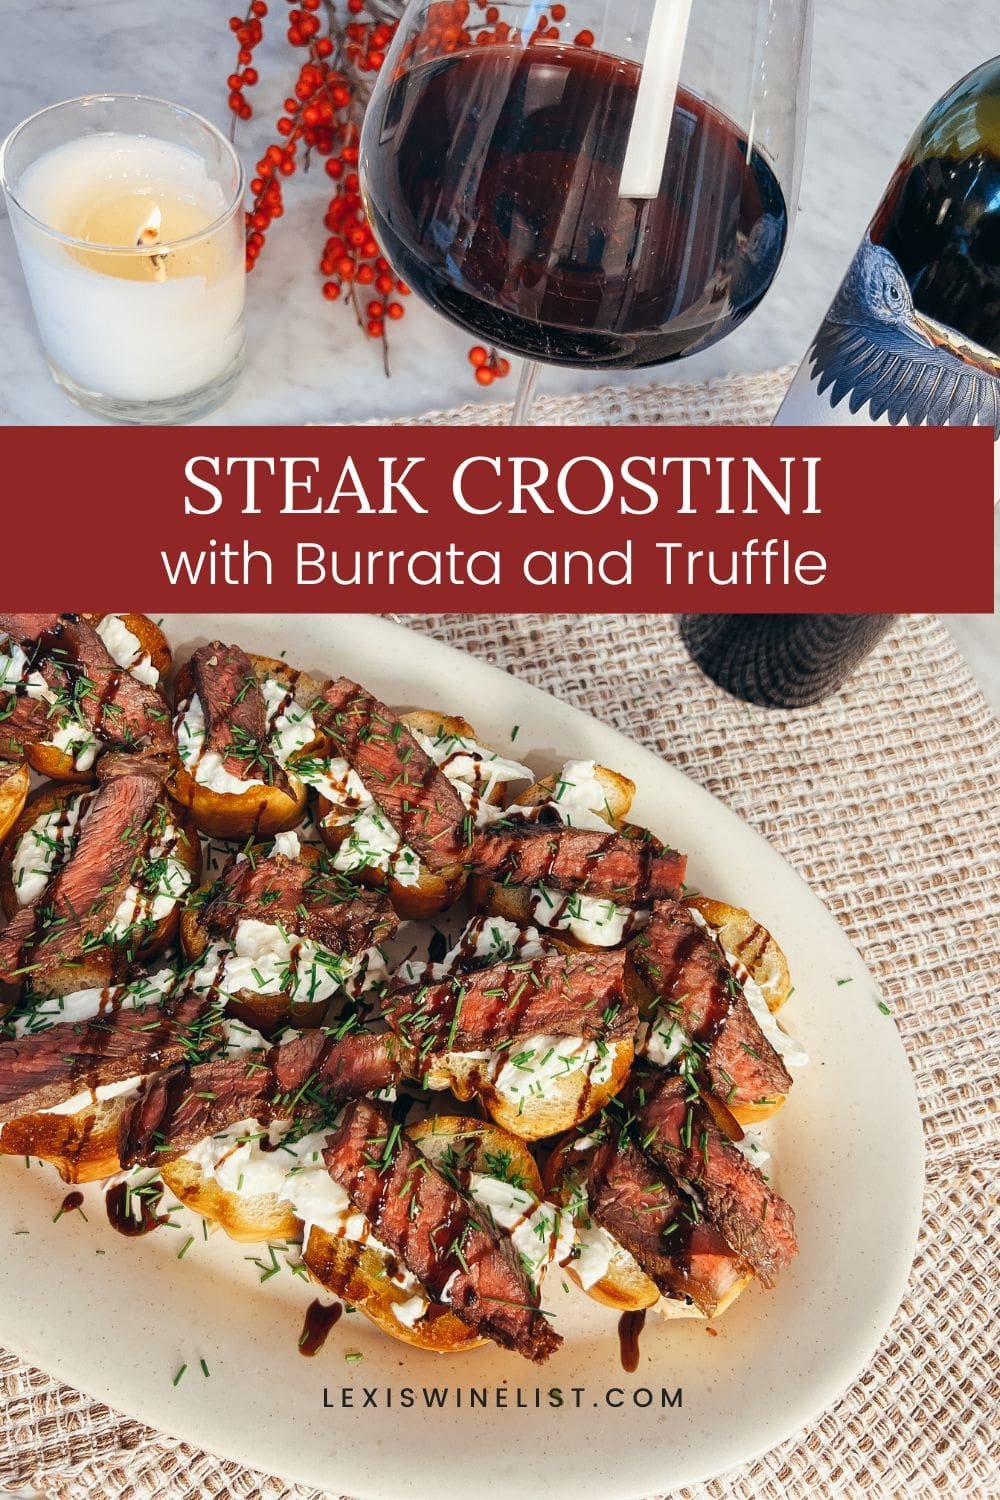 steak crostini with burrata and truffle.jpg